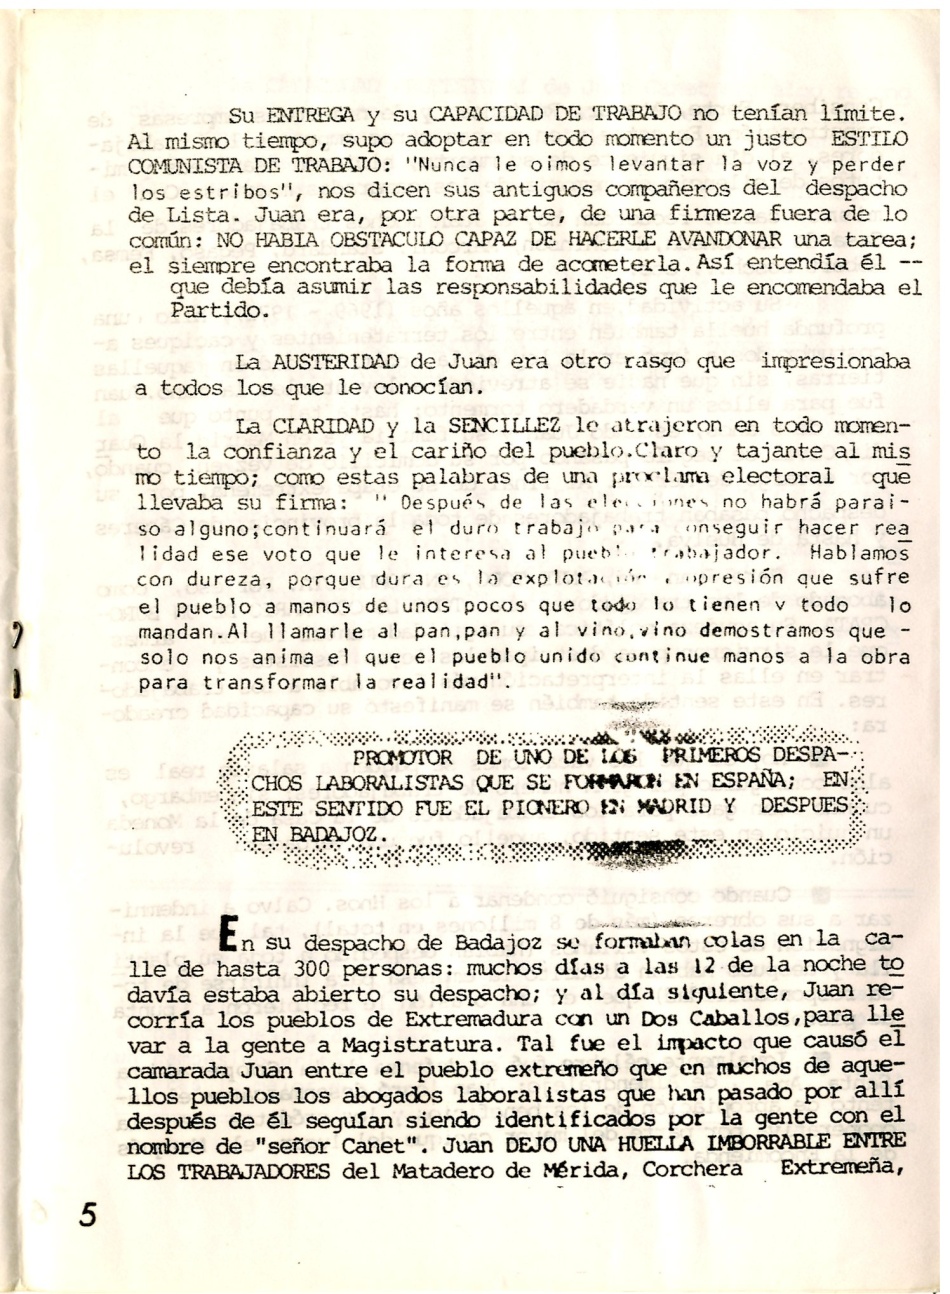 Juan Canet kolat, abogado. Secretario General de Madrid ORT. Miembro del CC de la ORT. Falleció en accidente de tráfico en tierras de Extremadura, cuando iba a participar en un mitin de la Candidatura de los Trabajadores en 1979
